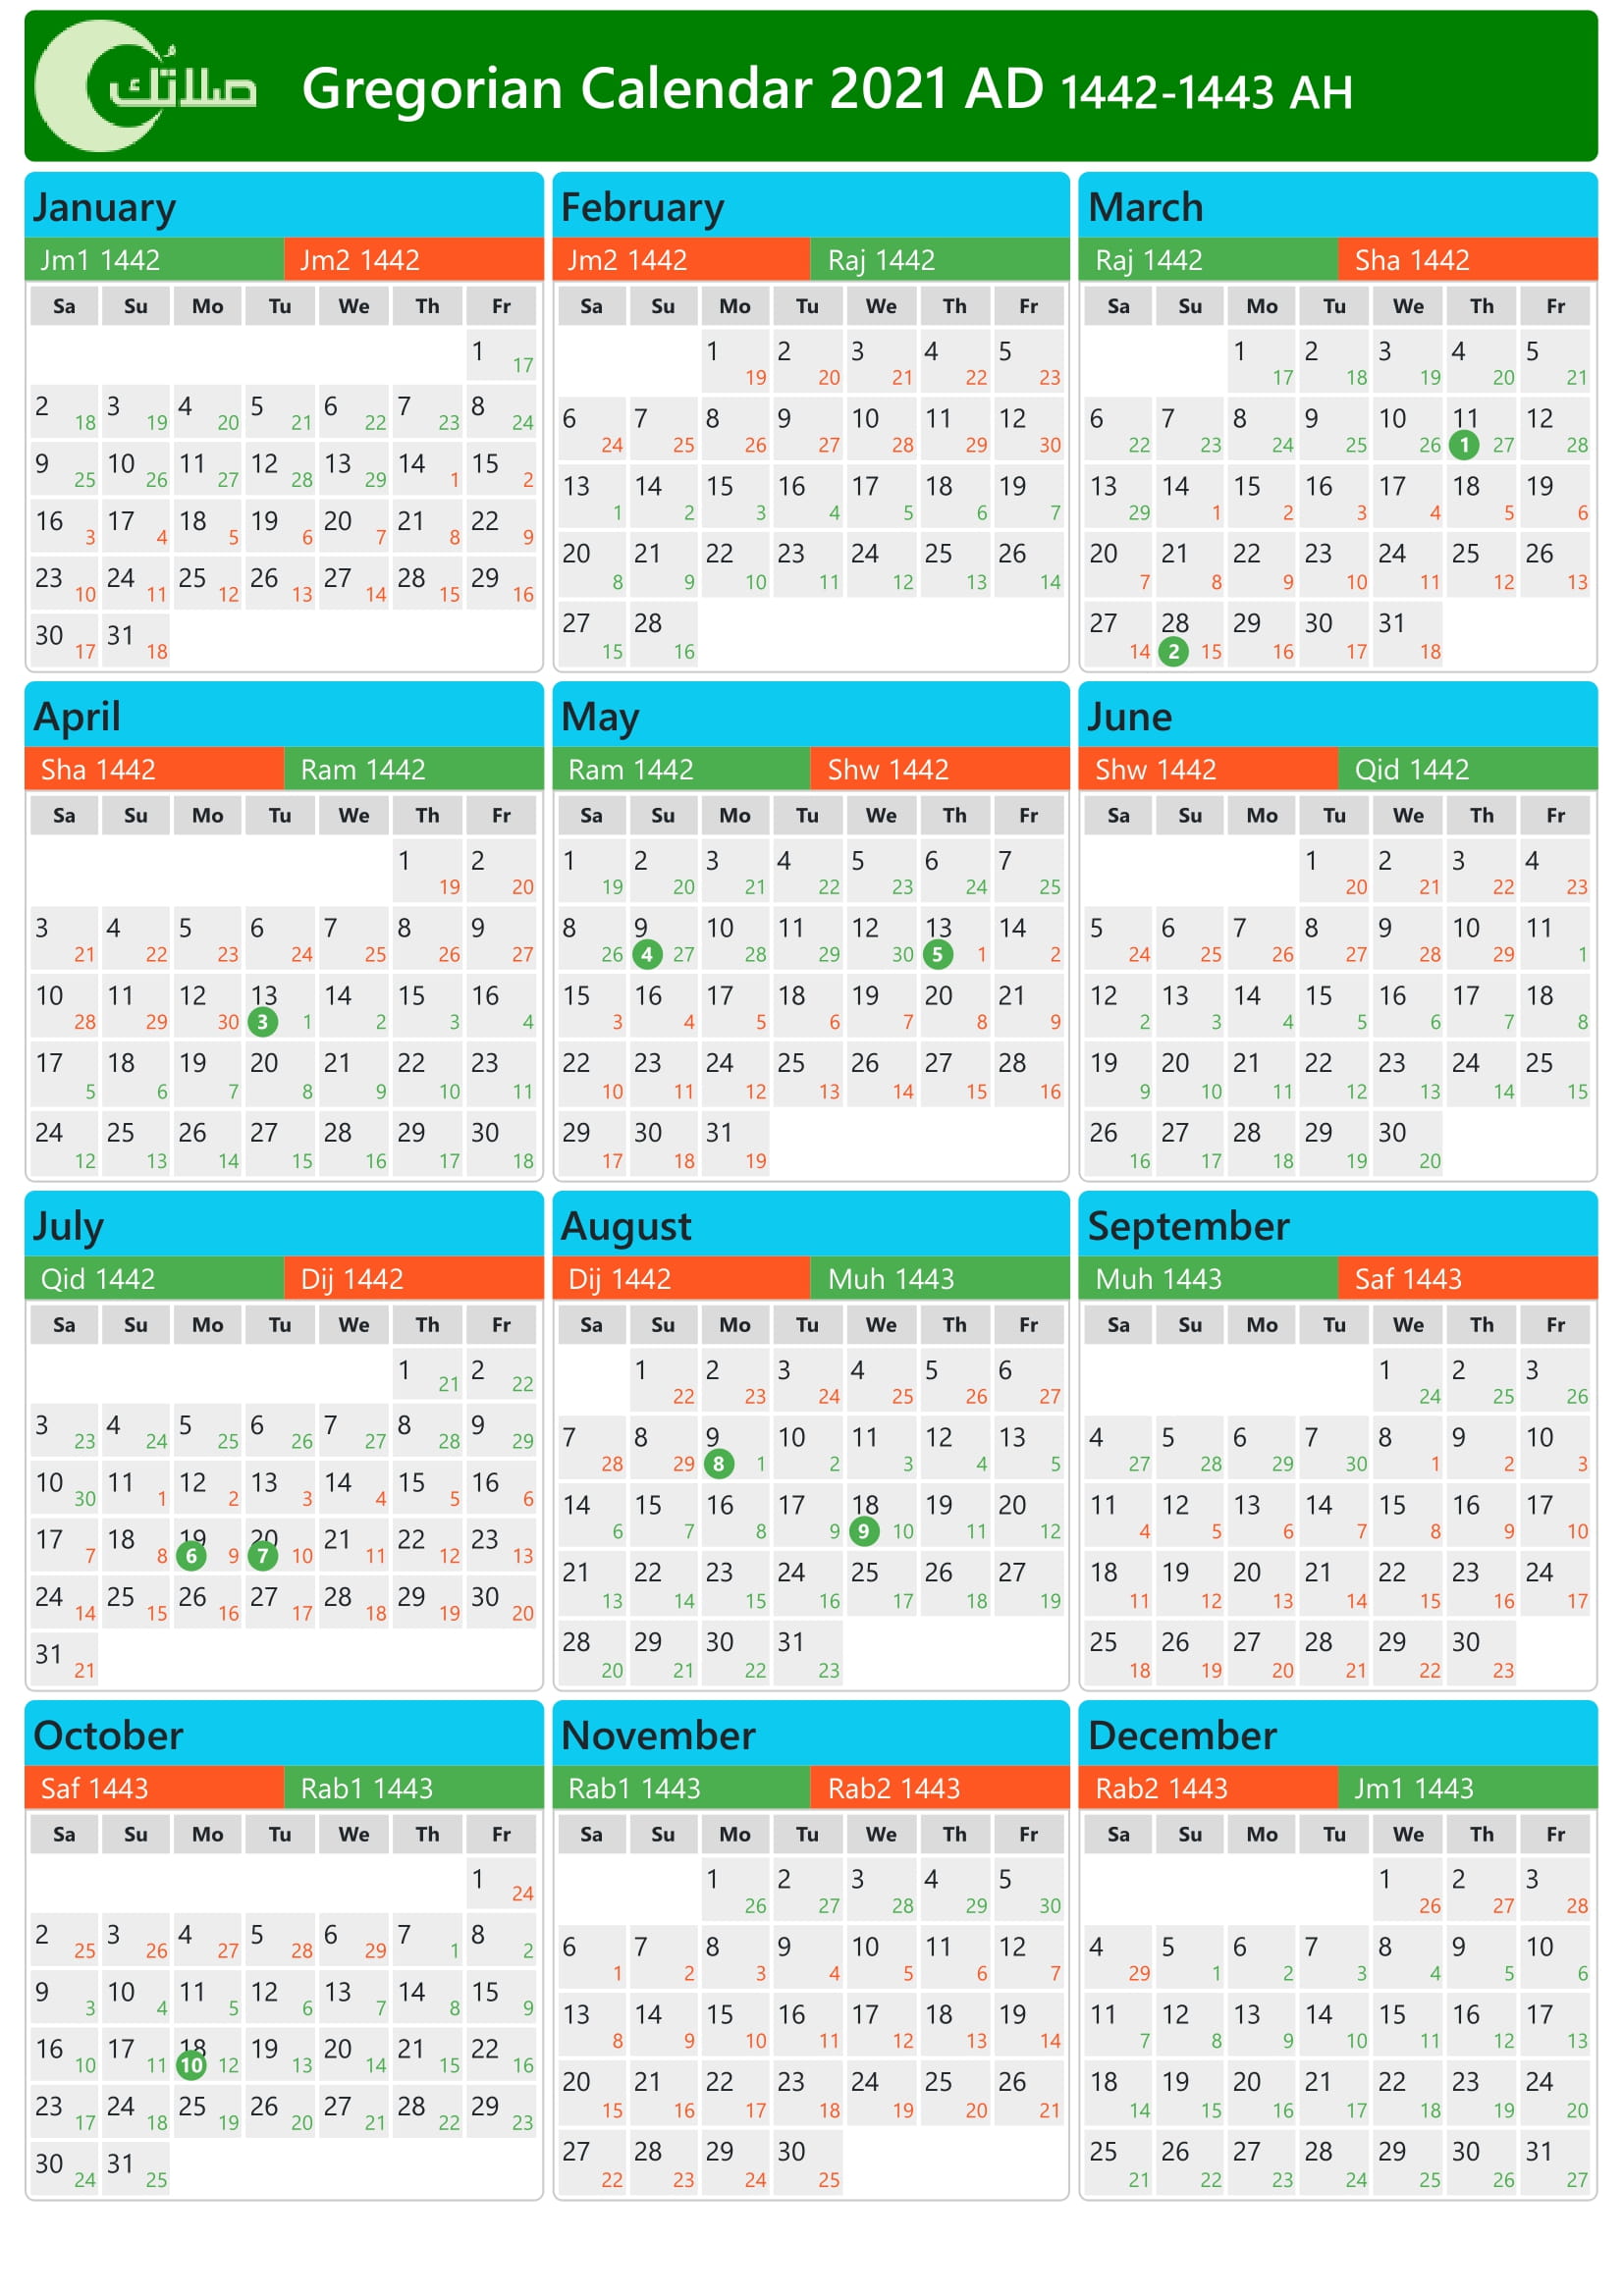 Gregorian Hijri Calendar 2021 (14421443) in Saudi Arabia